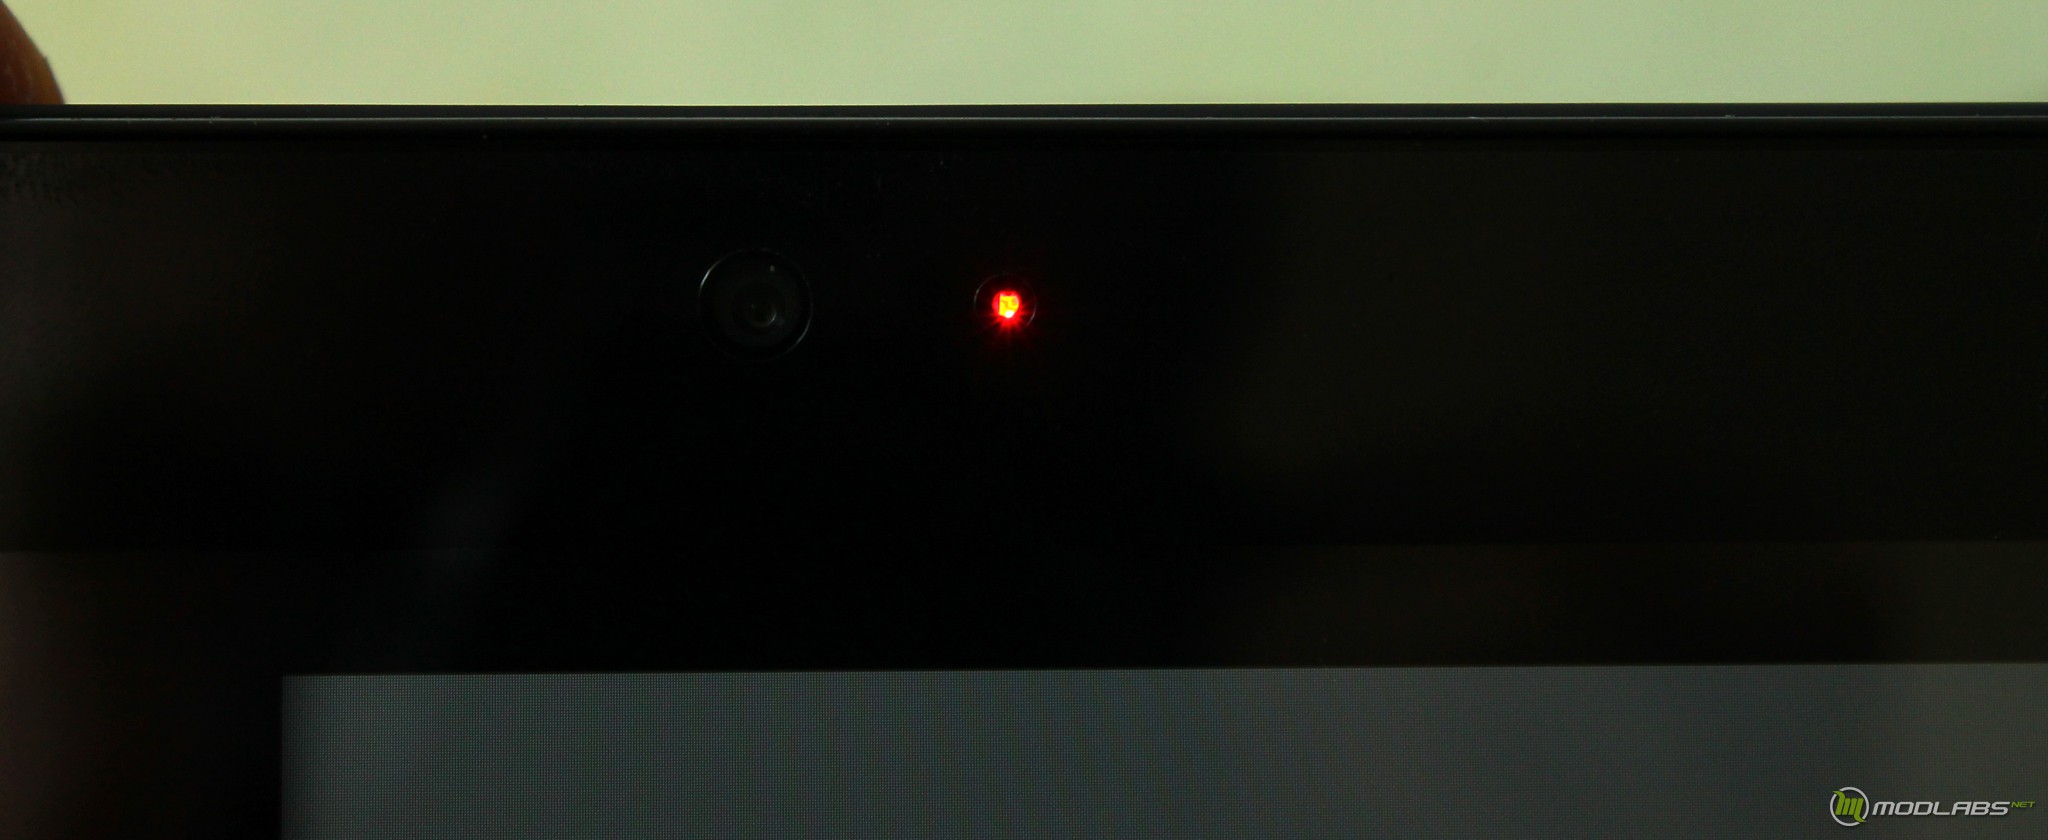 Камера в углу экрана. Красные точки на экране телевизора. Красные мерцающие точки на мониторе. Красная лампочка на телевизоре. Камера с красной точкой.